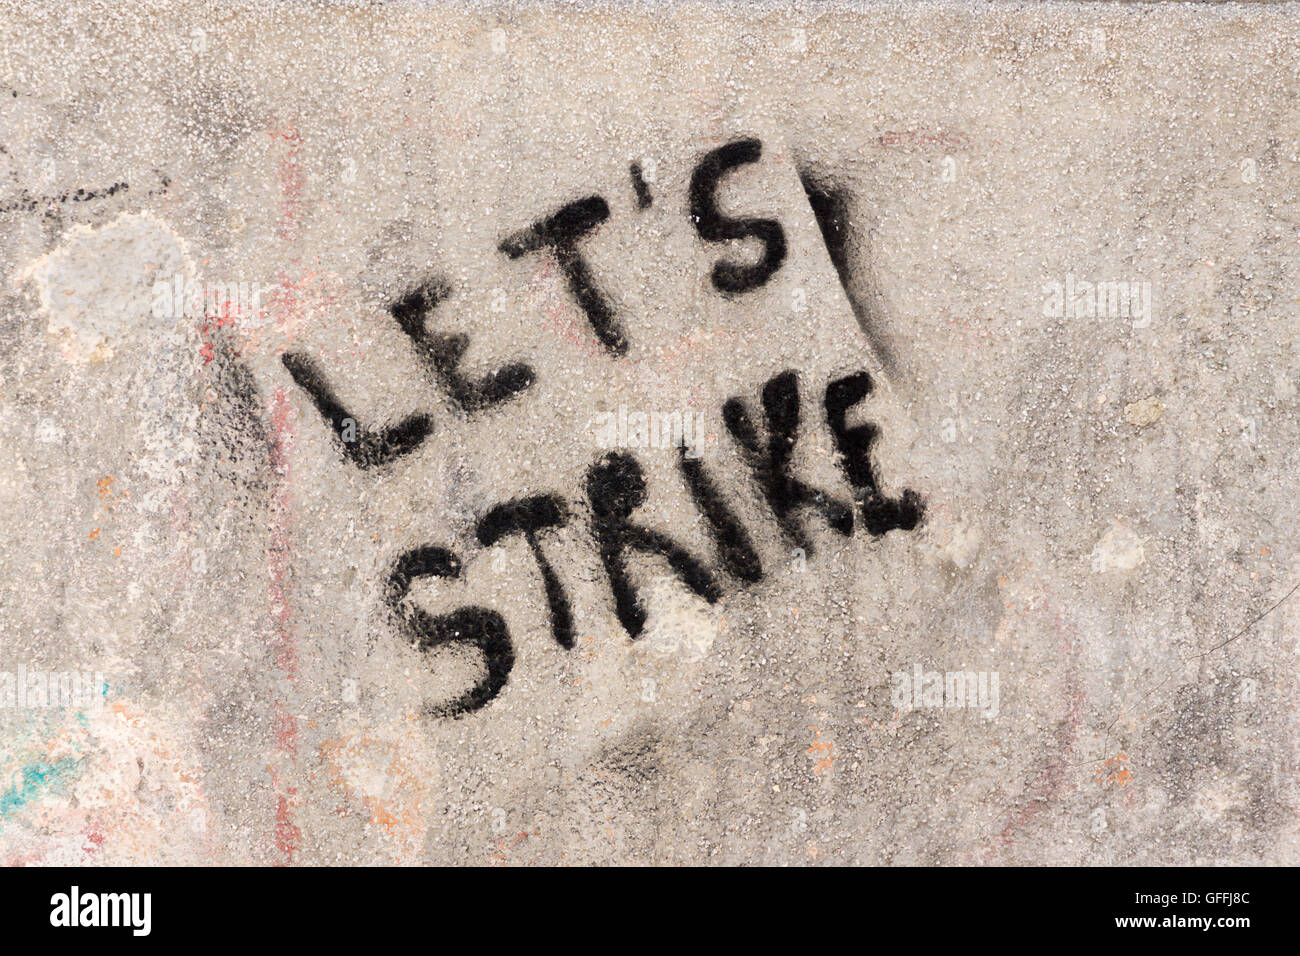 Graffiti peint en aérosol noir sur un mur à Venise, 'let's Strike'. Concept: Protestation, protestation, action industrielle Banque D'Images